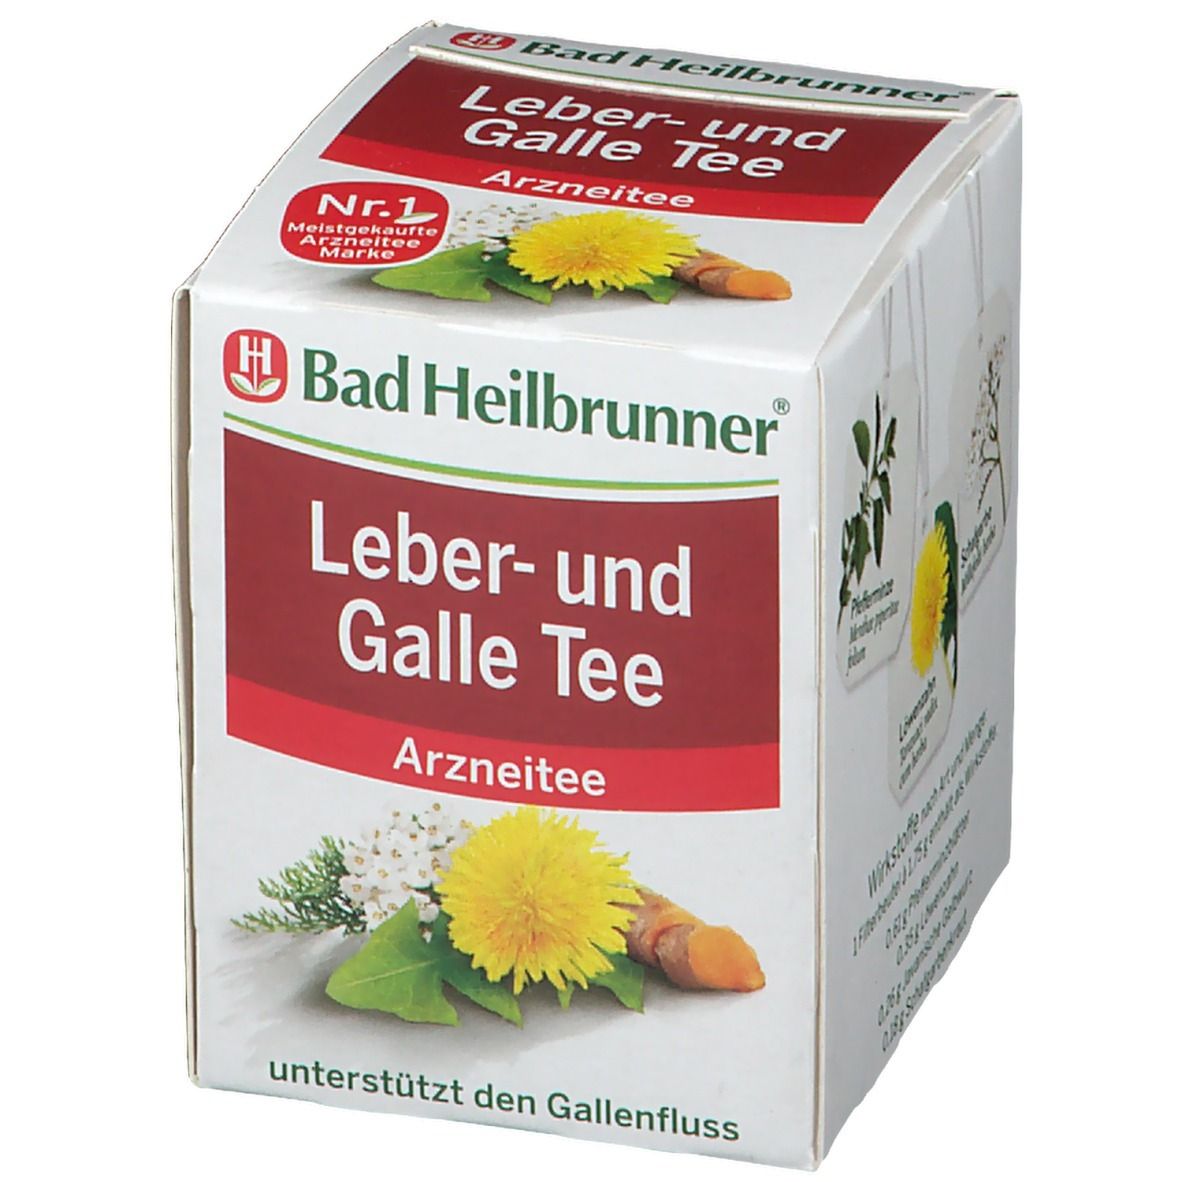 Bad Heilbrunner® Leber- und Galle Tee